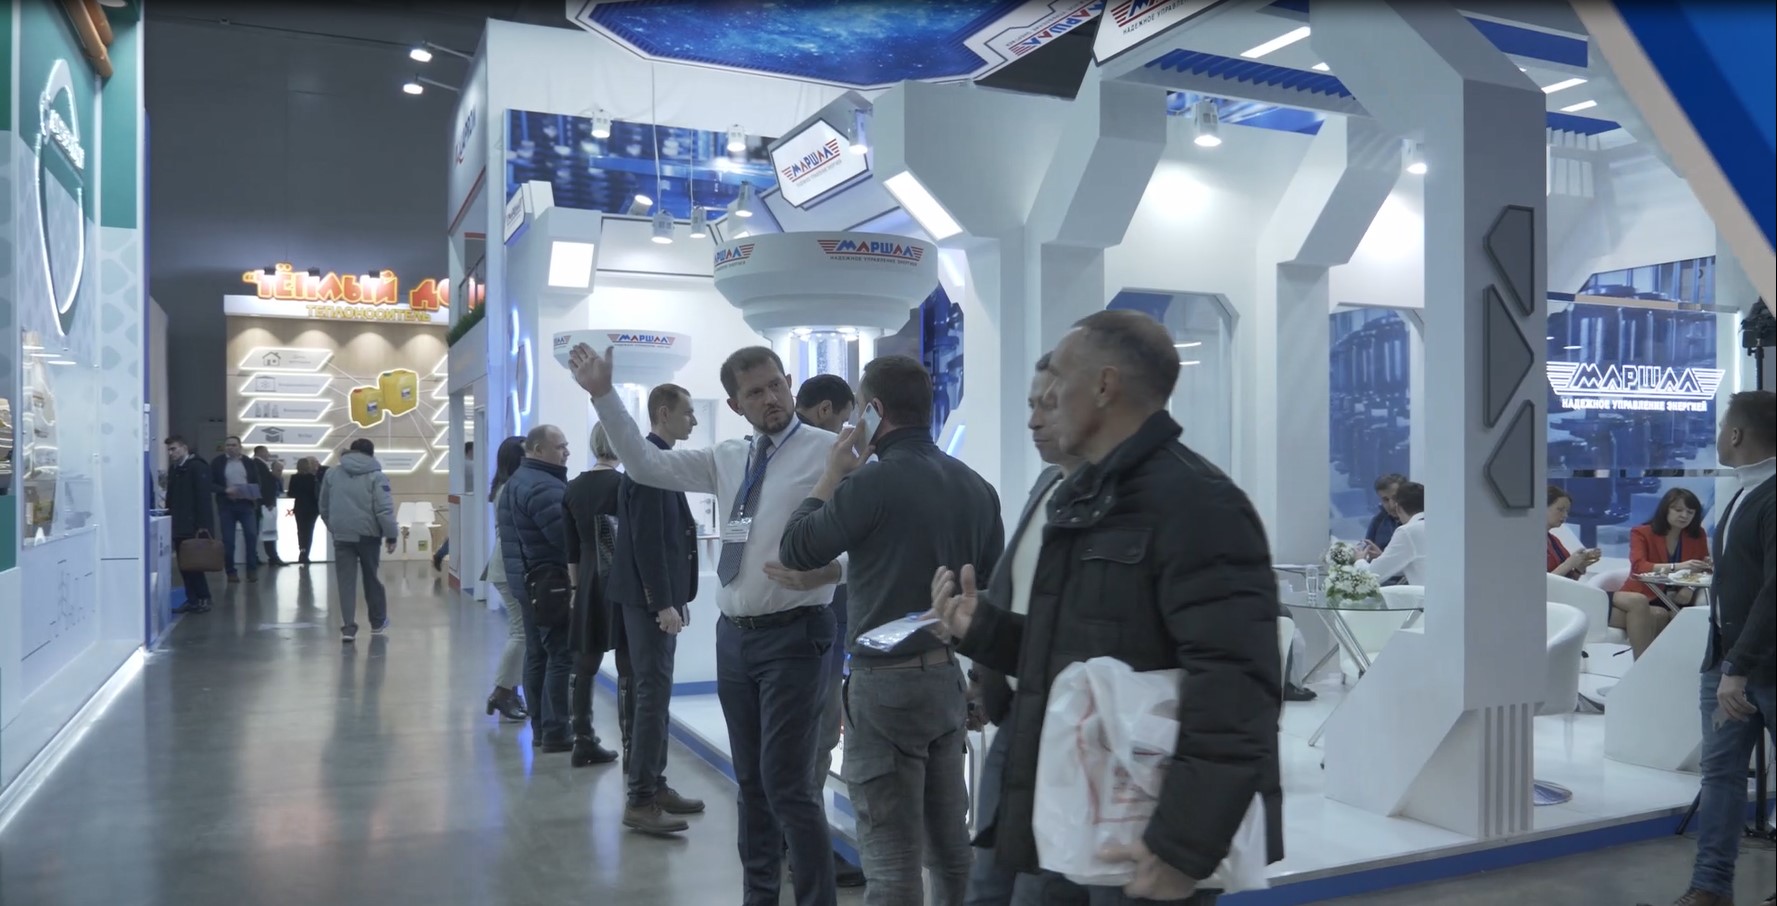 Видеорепортаж со стенда ЛЗТА "Маршал" на выставке AquaTherm Moscow 2020